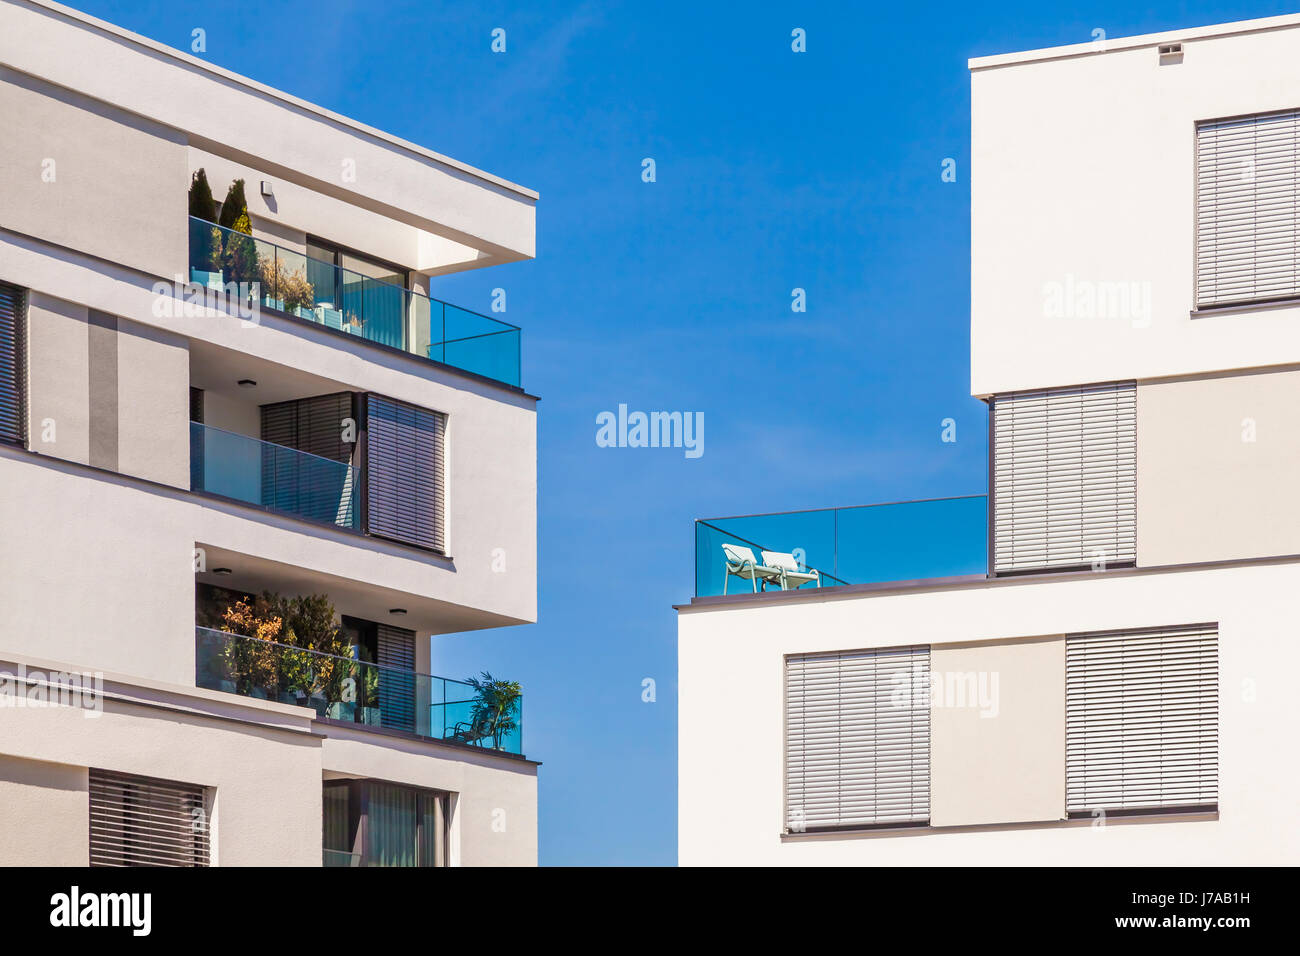 Deutschland, Bayern, Neu-Ulm, moderne Mehrfamilienhäuser, Sicher, Neubau, moderne Architektur, Balkon, Stühle Foto Stock